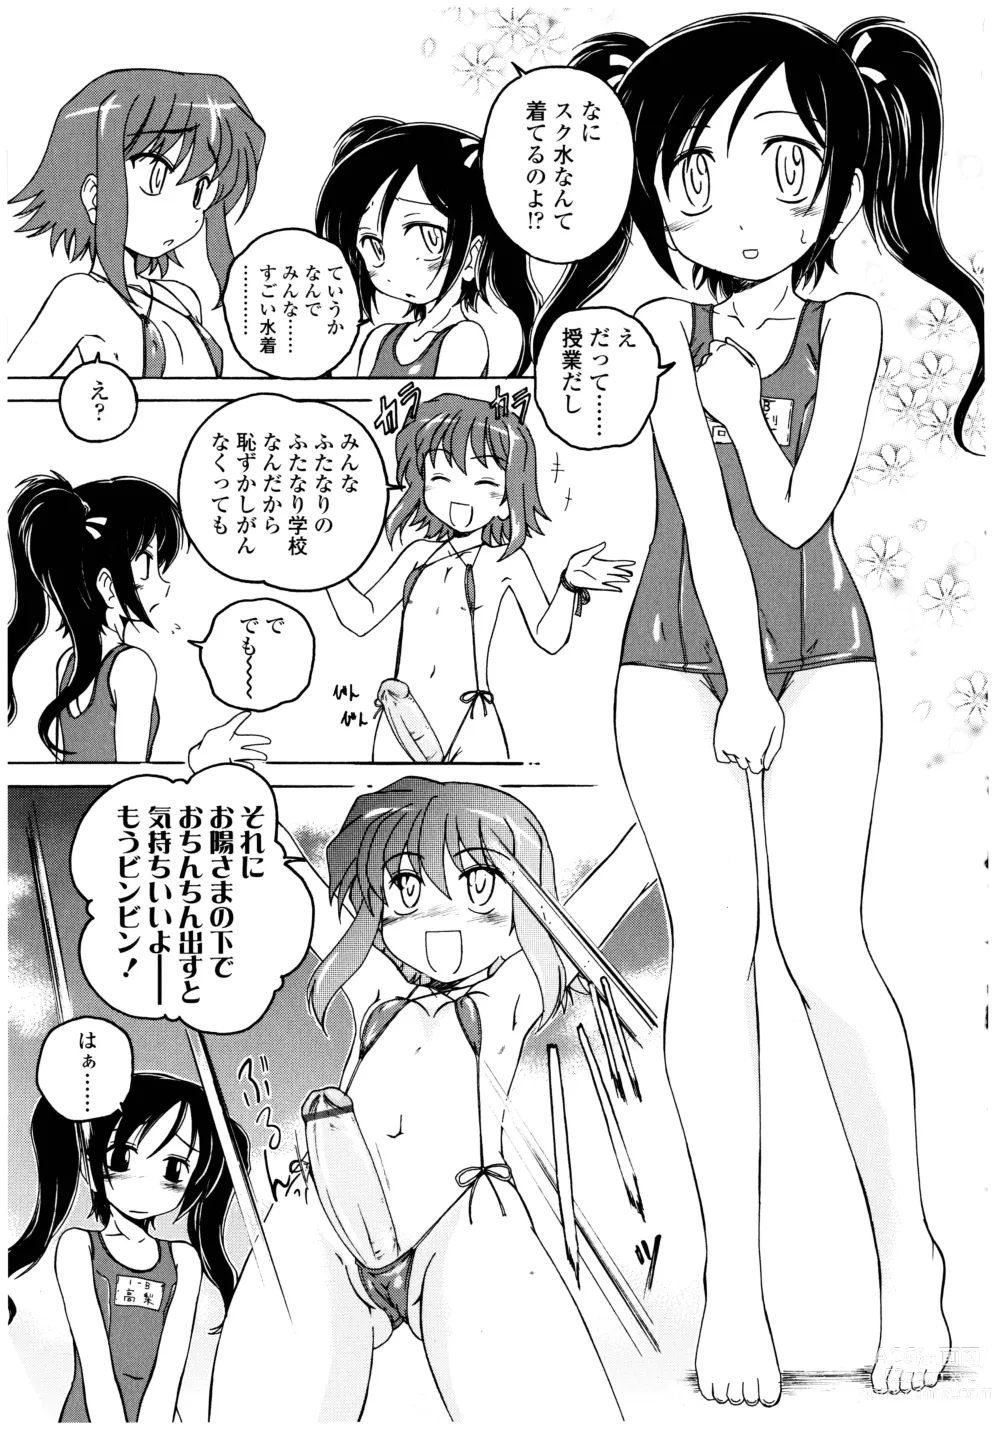 Page 9 of manga Futanari Yesterday